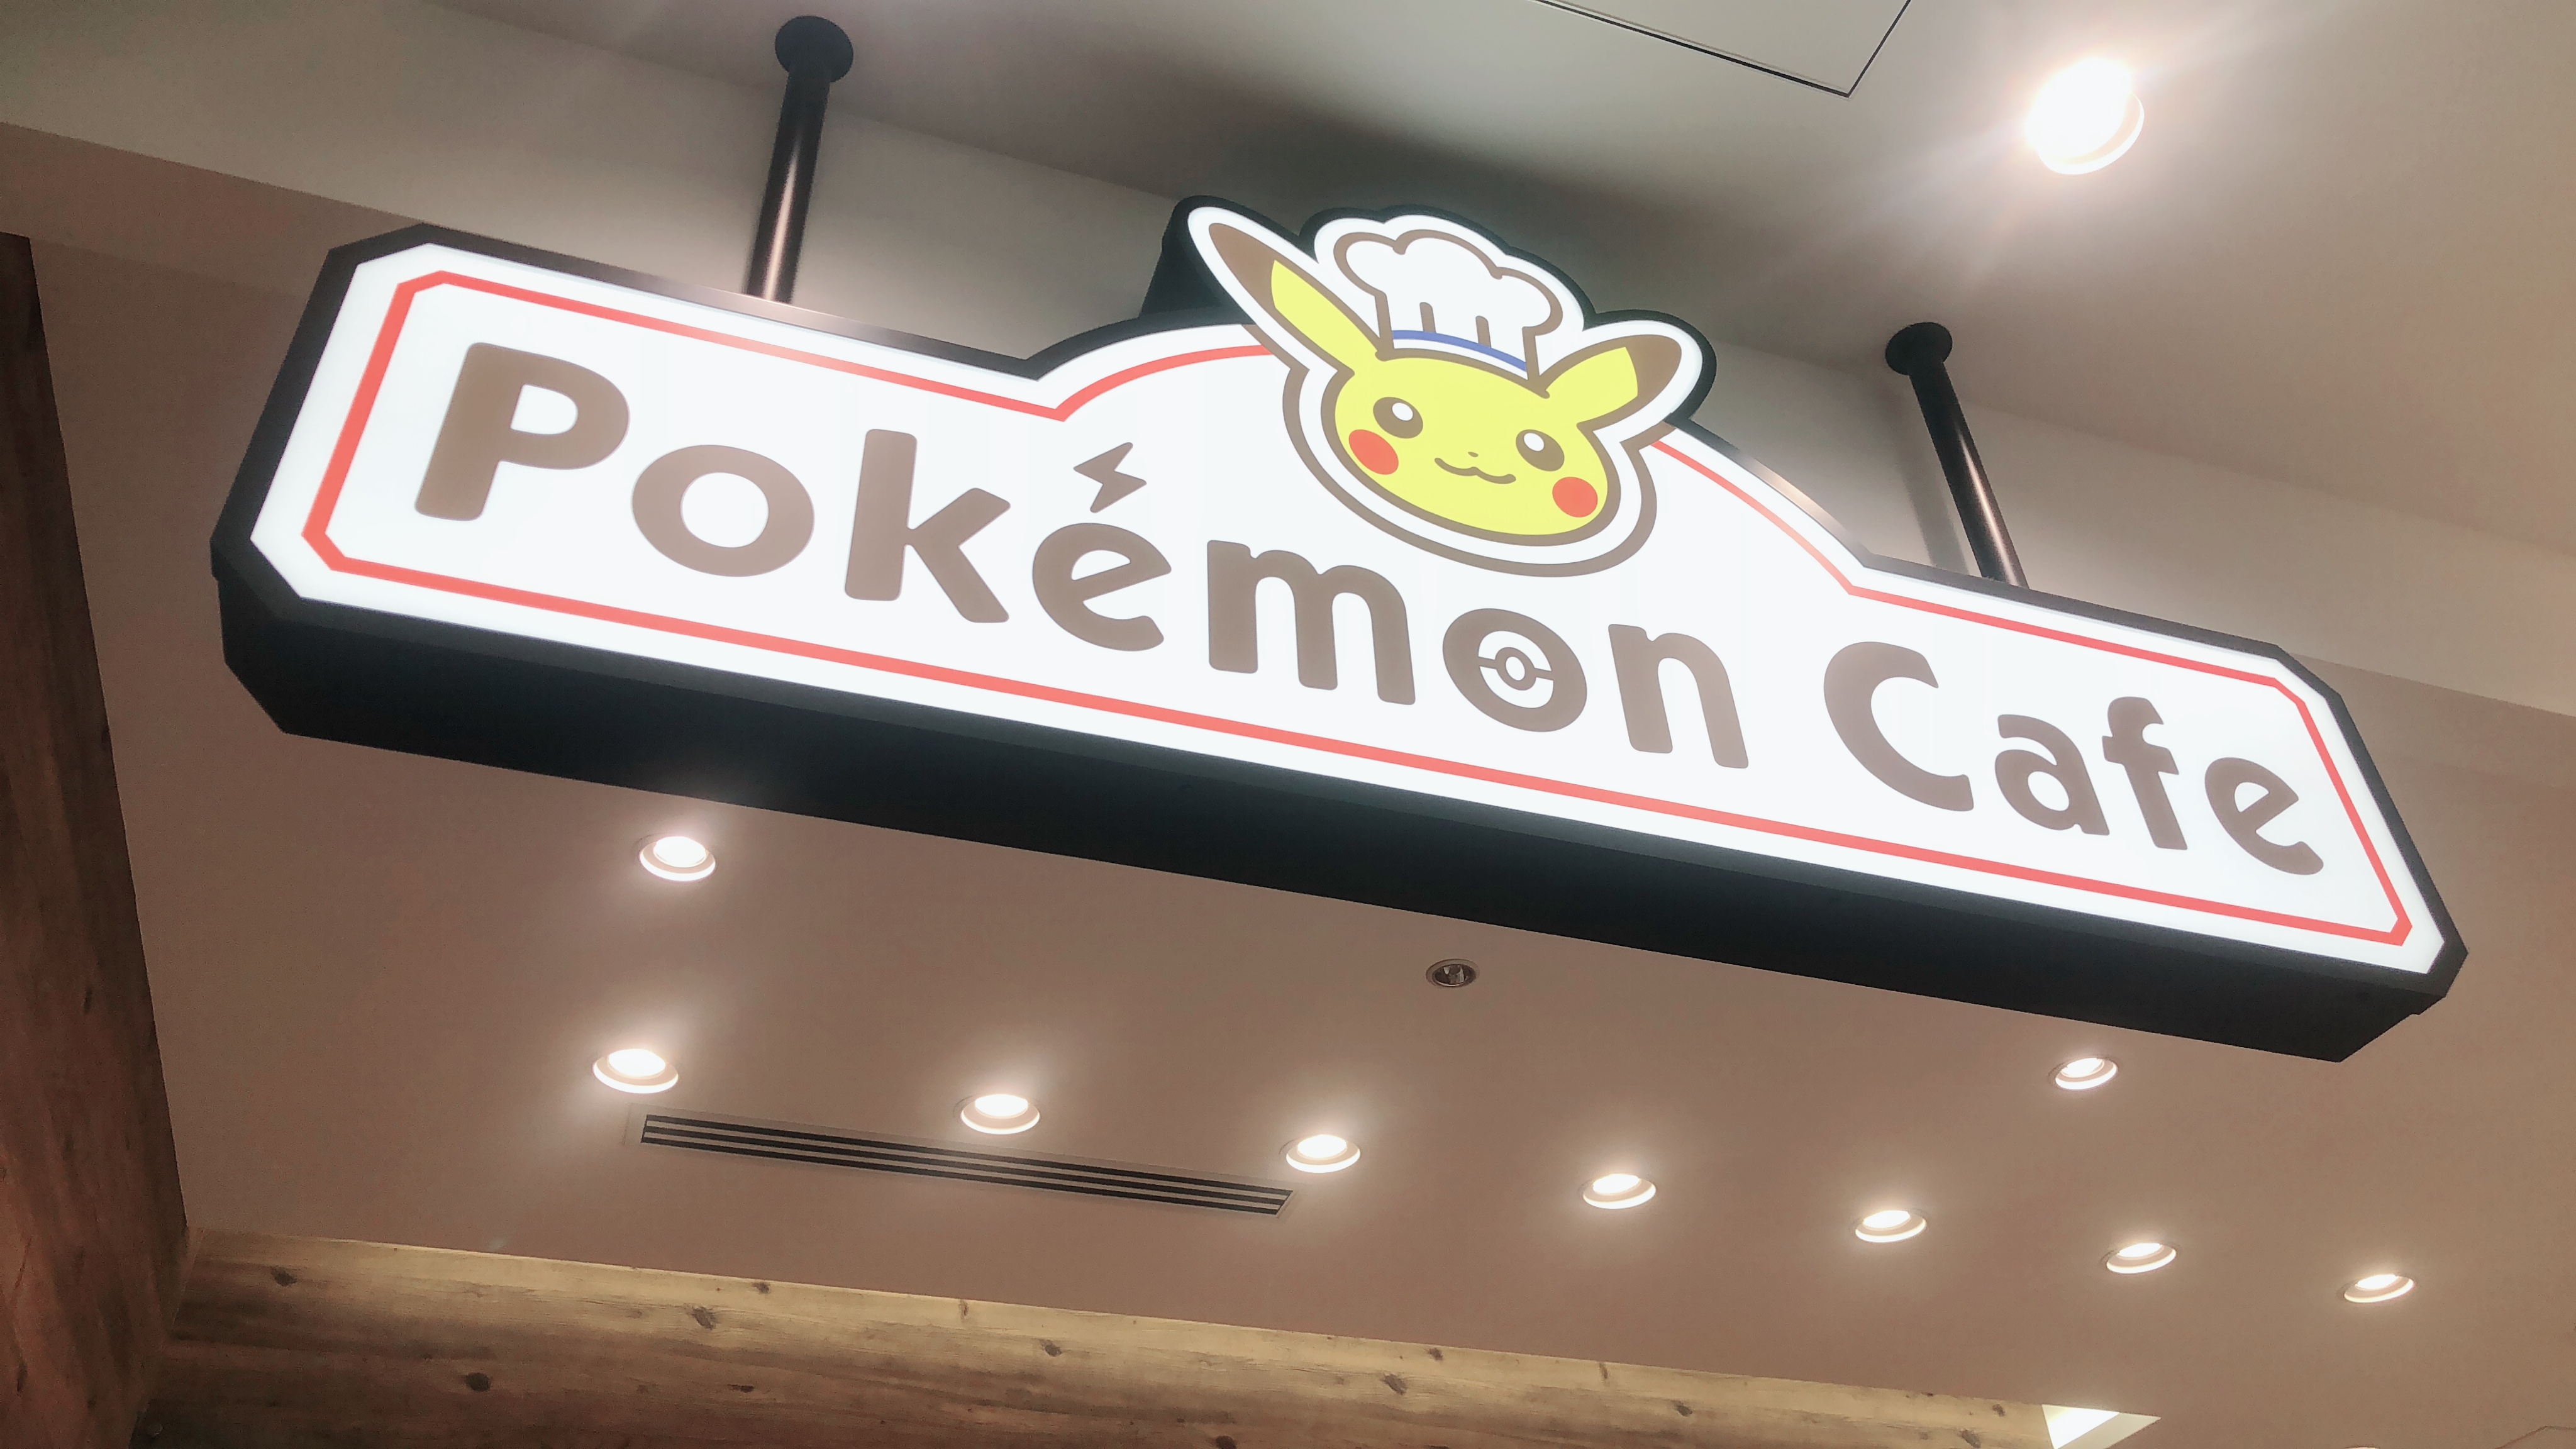 Dining at the Pokémon Café